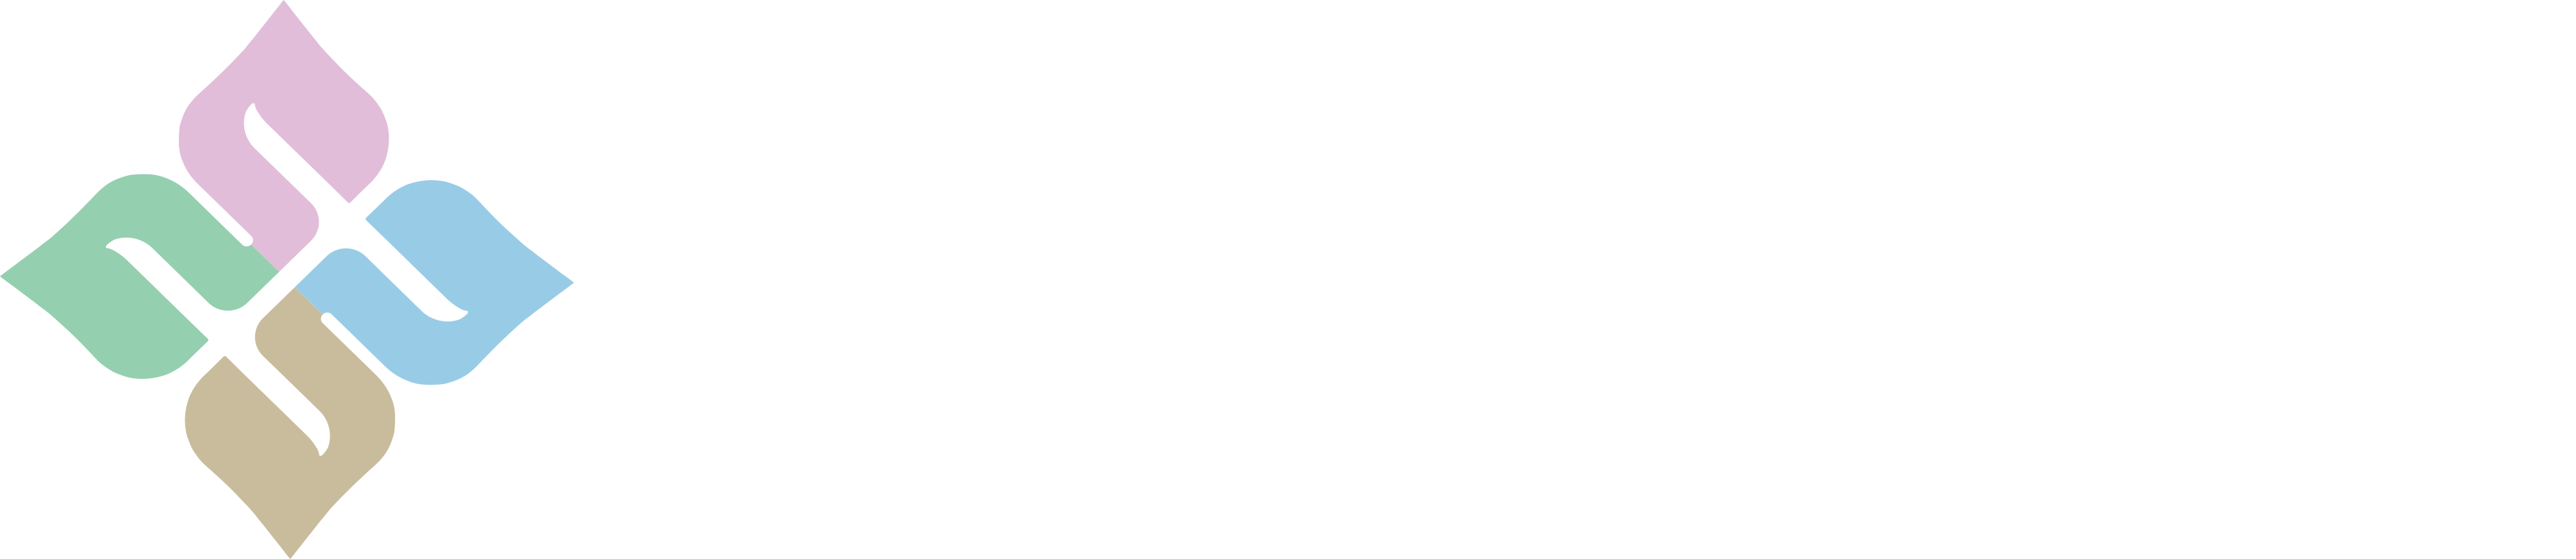 广州市花木采研生物科技有限公司